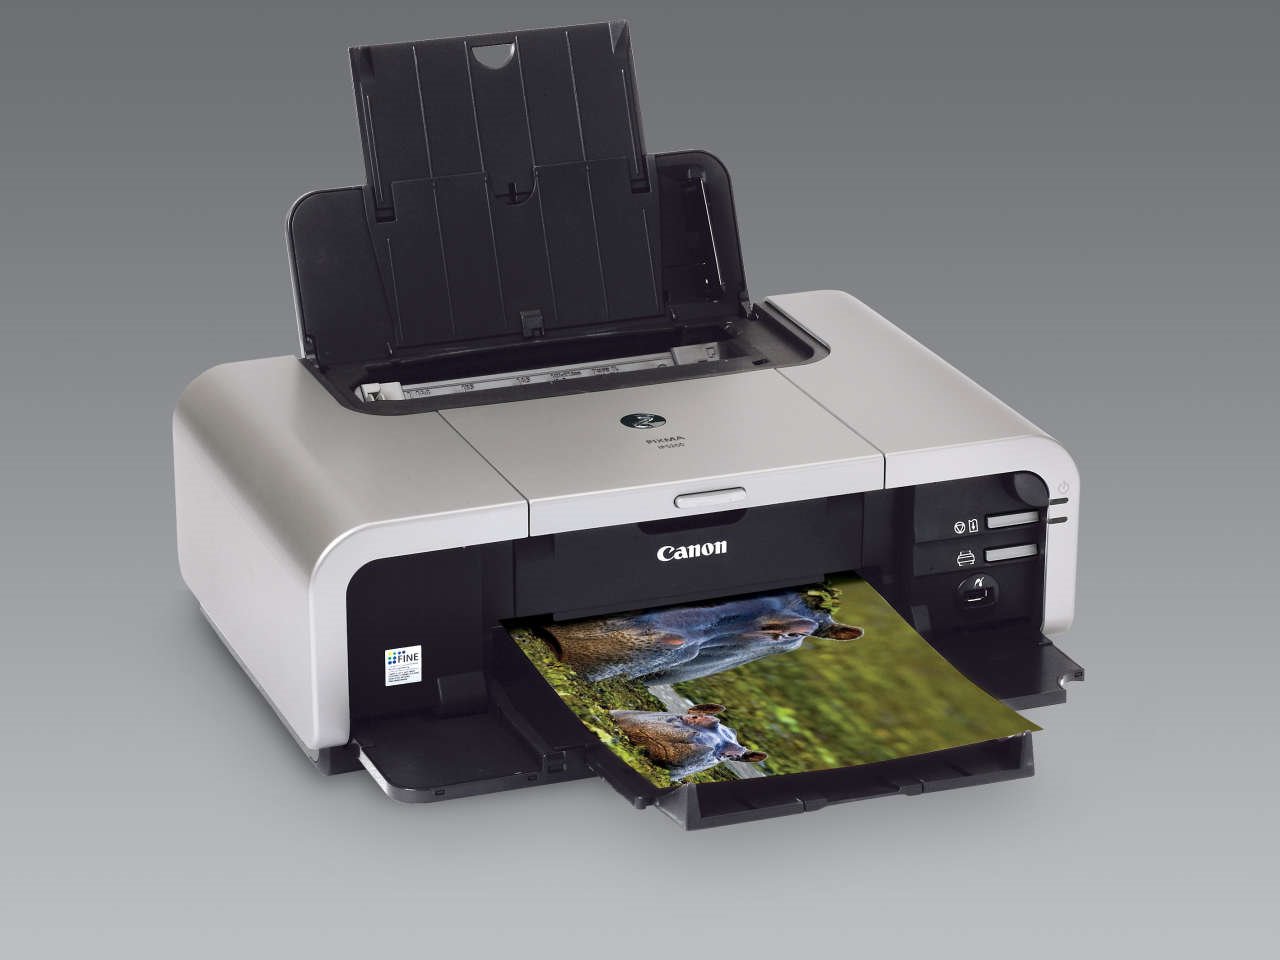 canon mp490 printer lignment